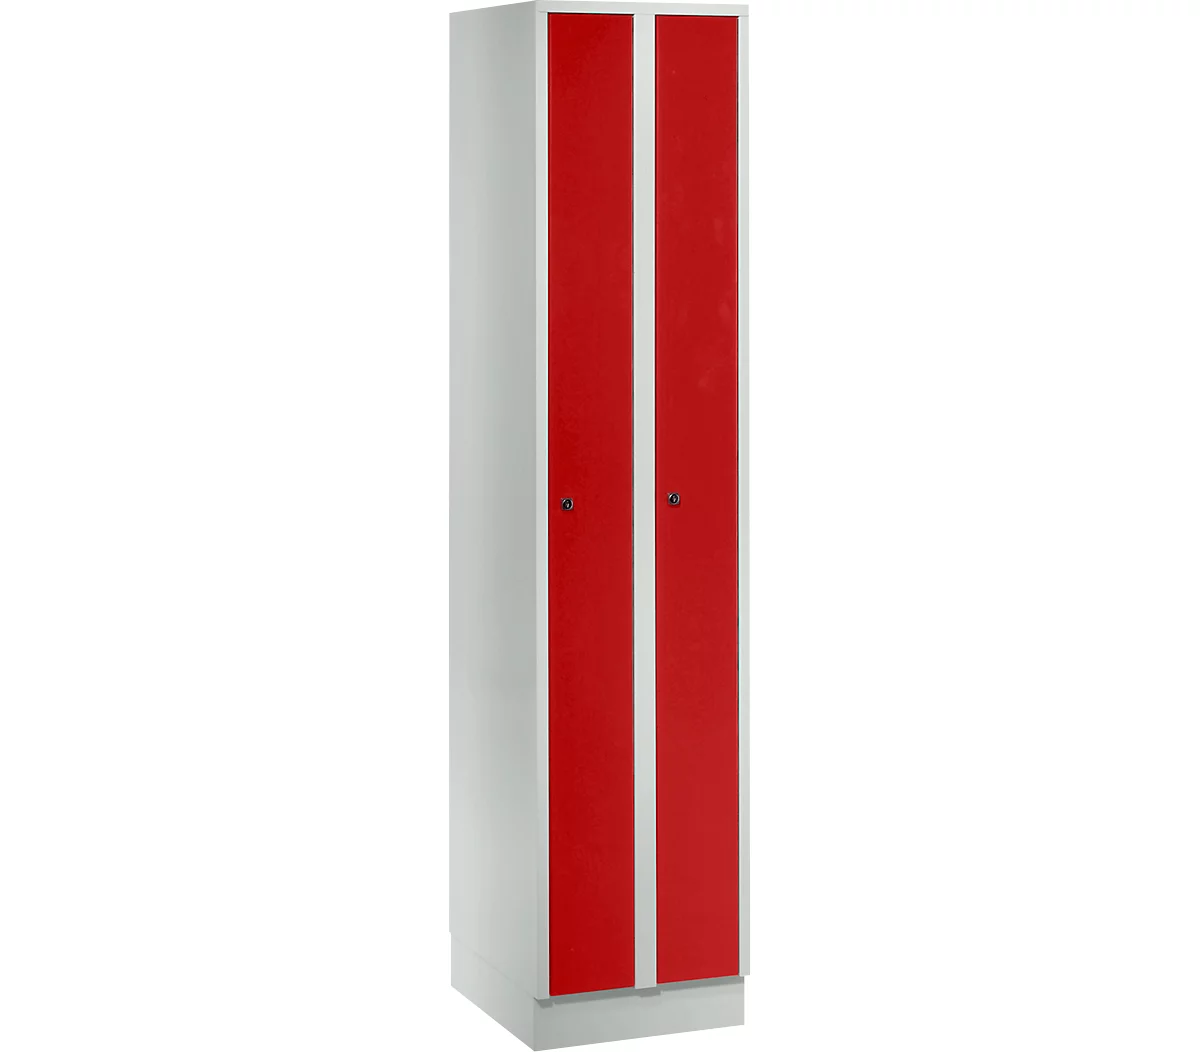 Raumspargarderobe, Abteilbreite 200 mm, abschließbar, 2 Abteile, rot